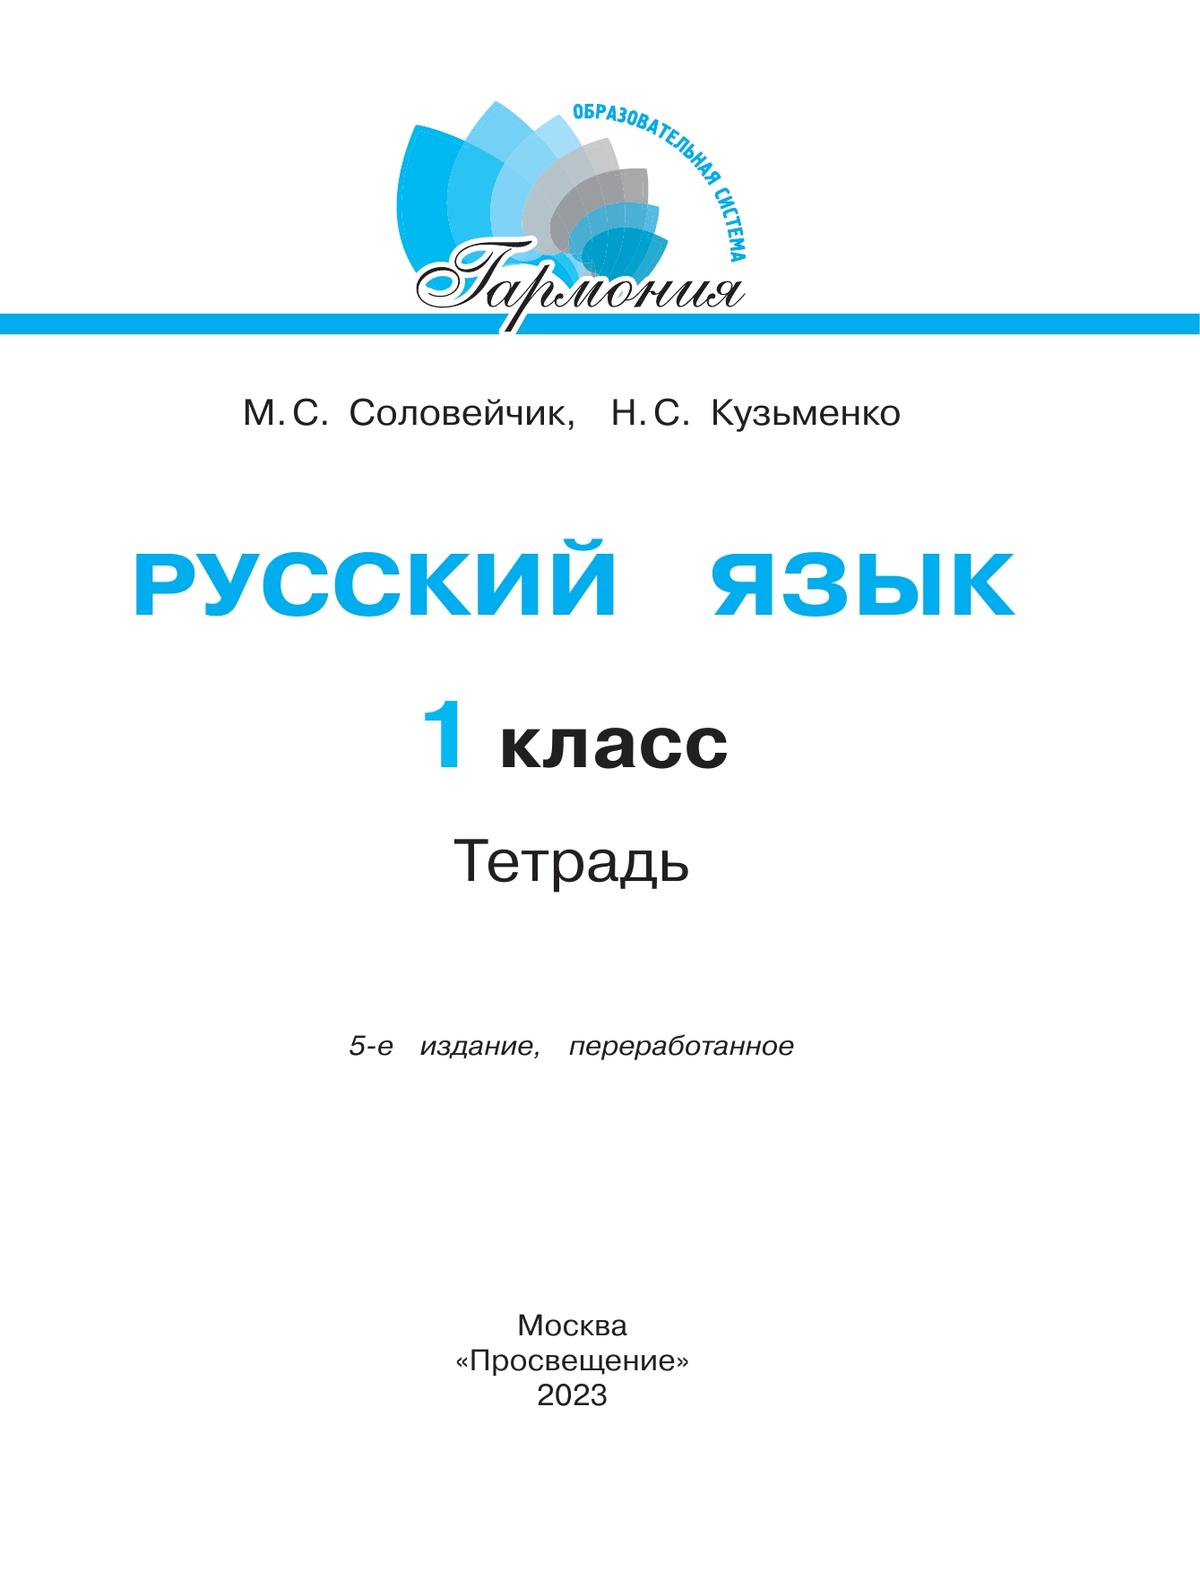 Русский язык. Тетрадь. 1 класс 4